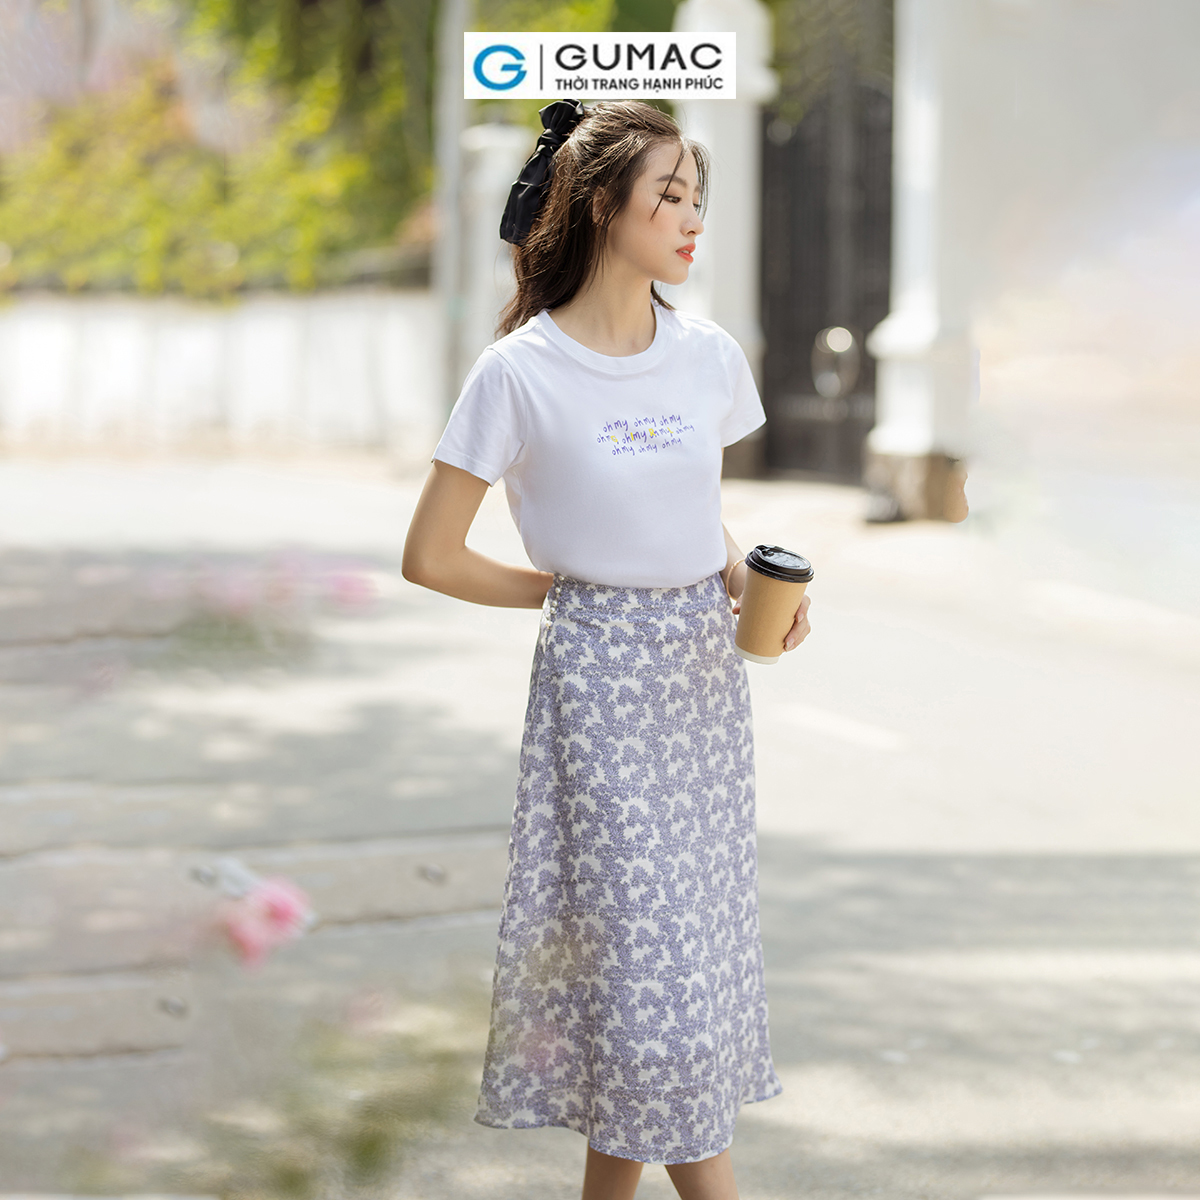 Chân váy A họa tiết hoa phối nút thanh lịch nữ tính thời trang GUMAC VD07022